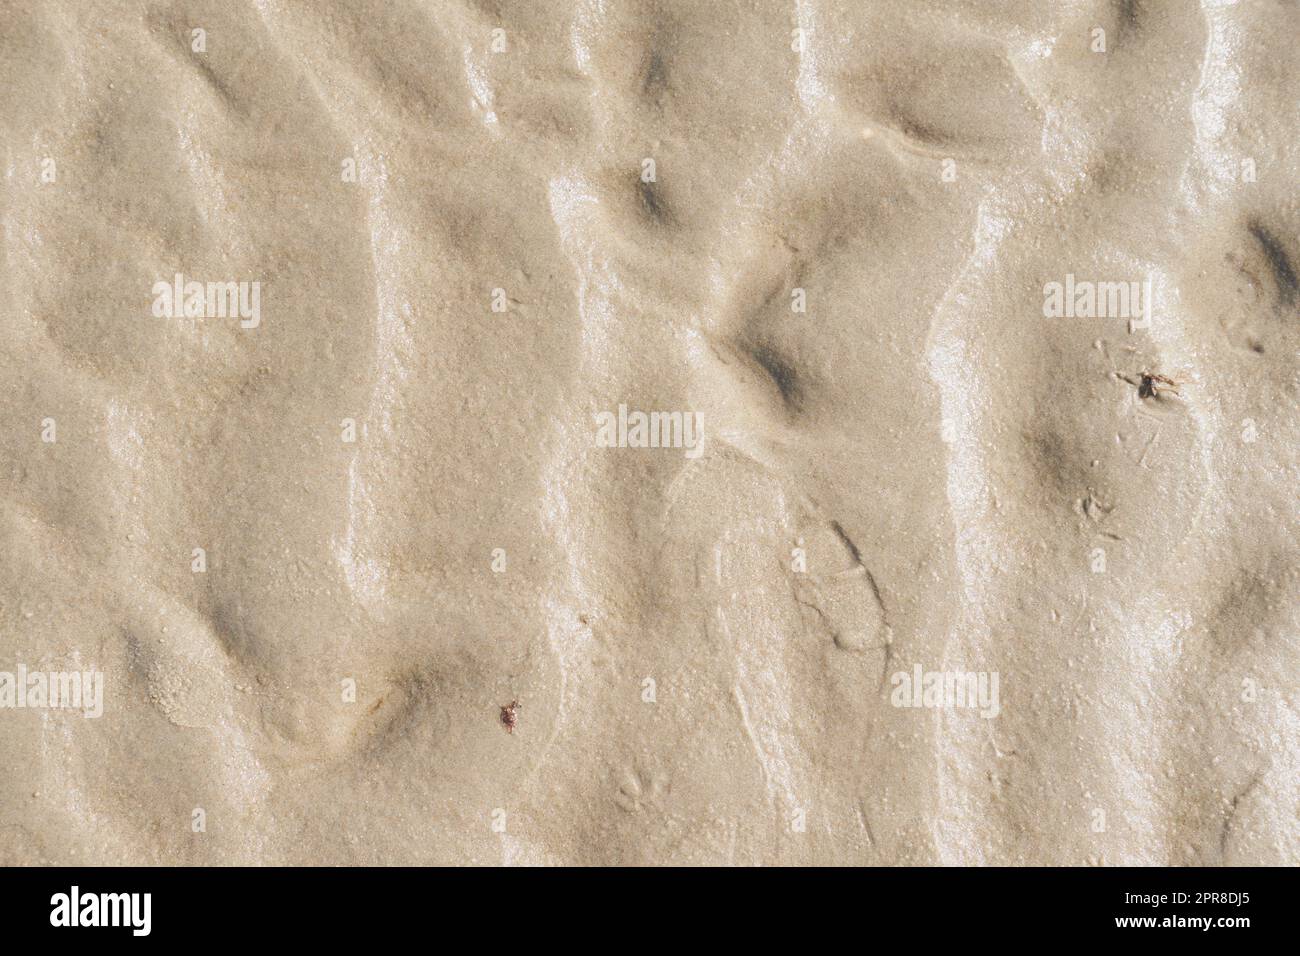 Primo piano della superficie marrone testurizzata con spazio copiato. Dettagli e motivi di sabbia o terreno con spazio coperto. Ingrandire le forme sulla sabbia, la texture e il pavimento ruvido a livello di superficie, lo sfondo astratto Foto Stock